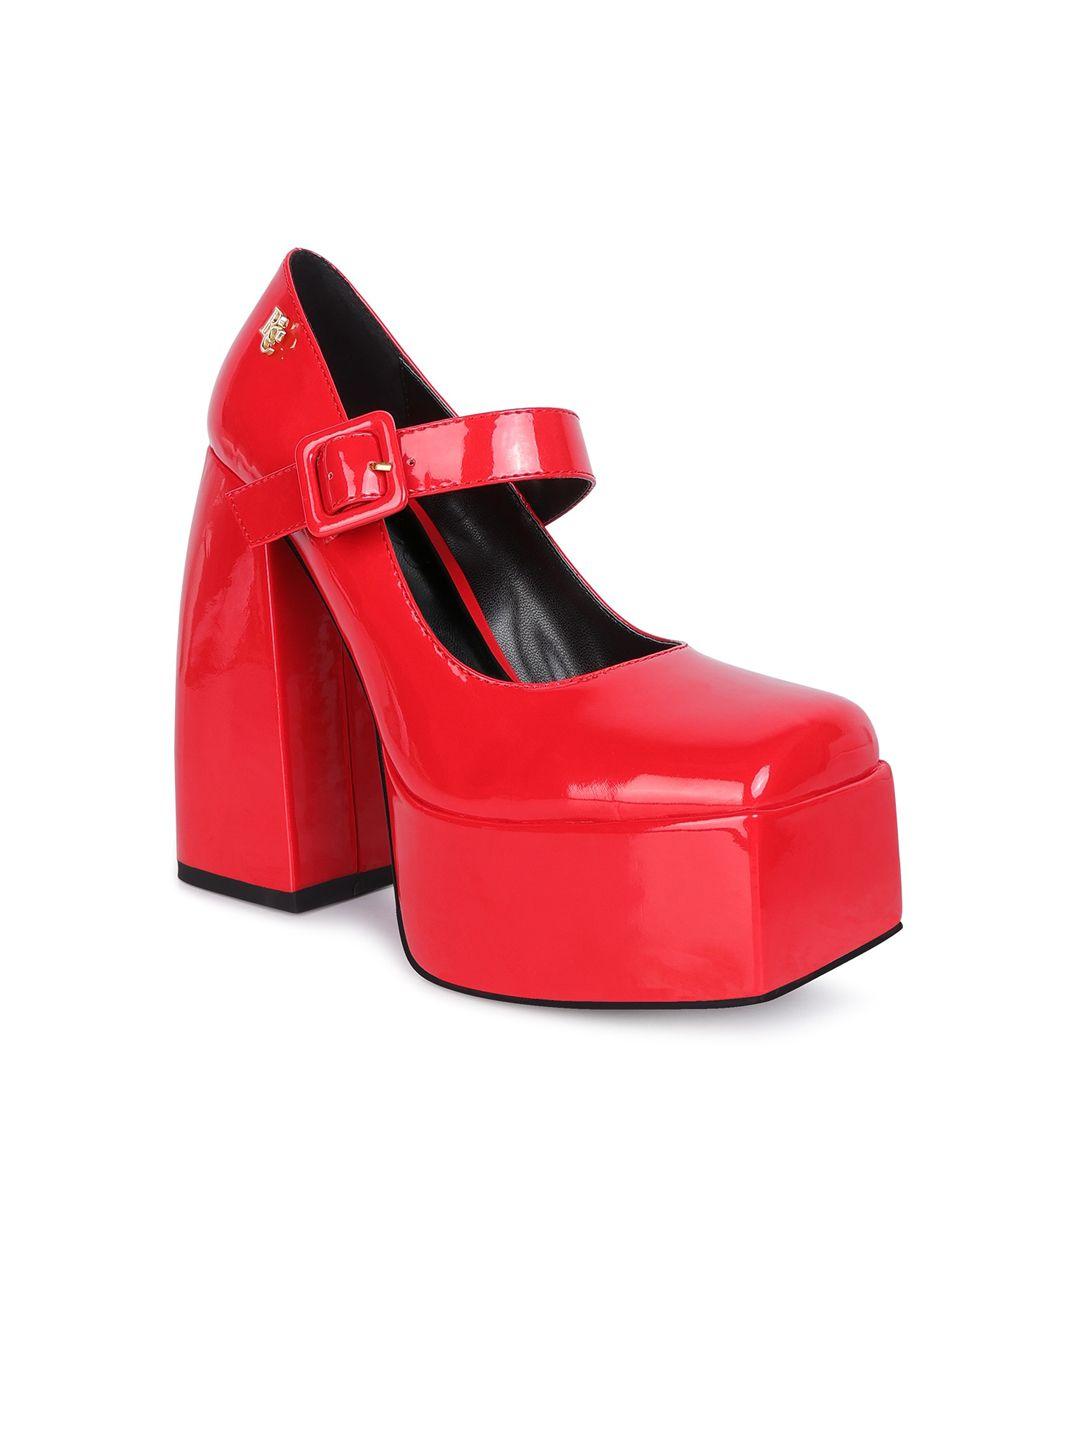 rag & co square toe block heels pumps